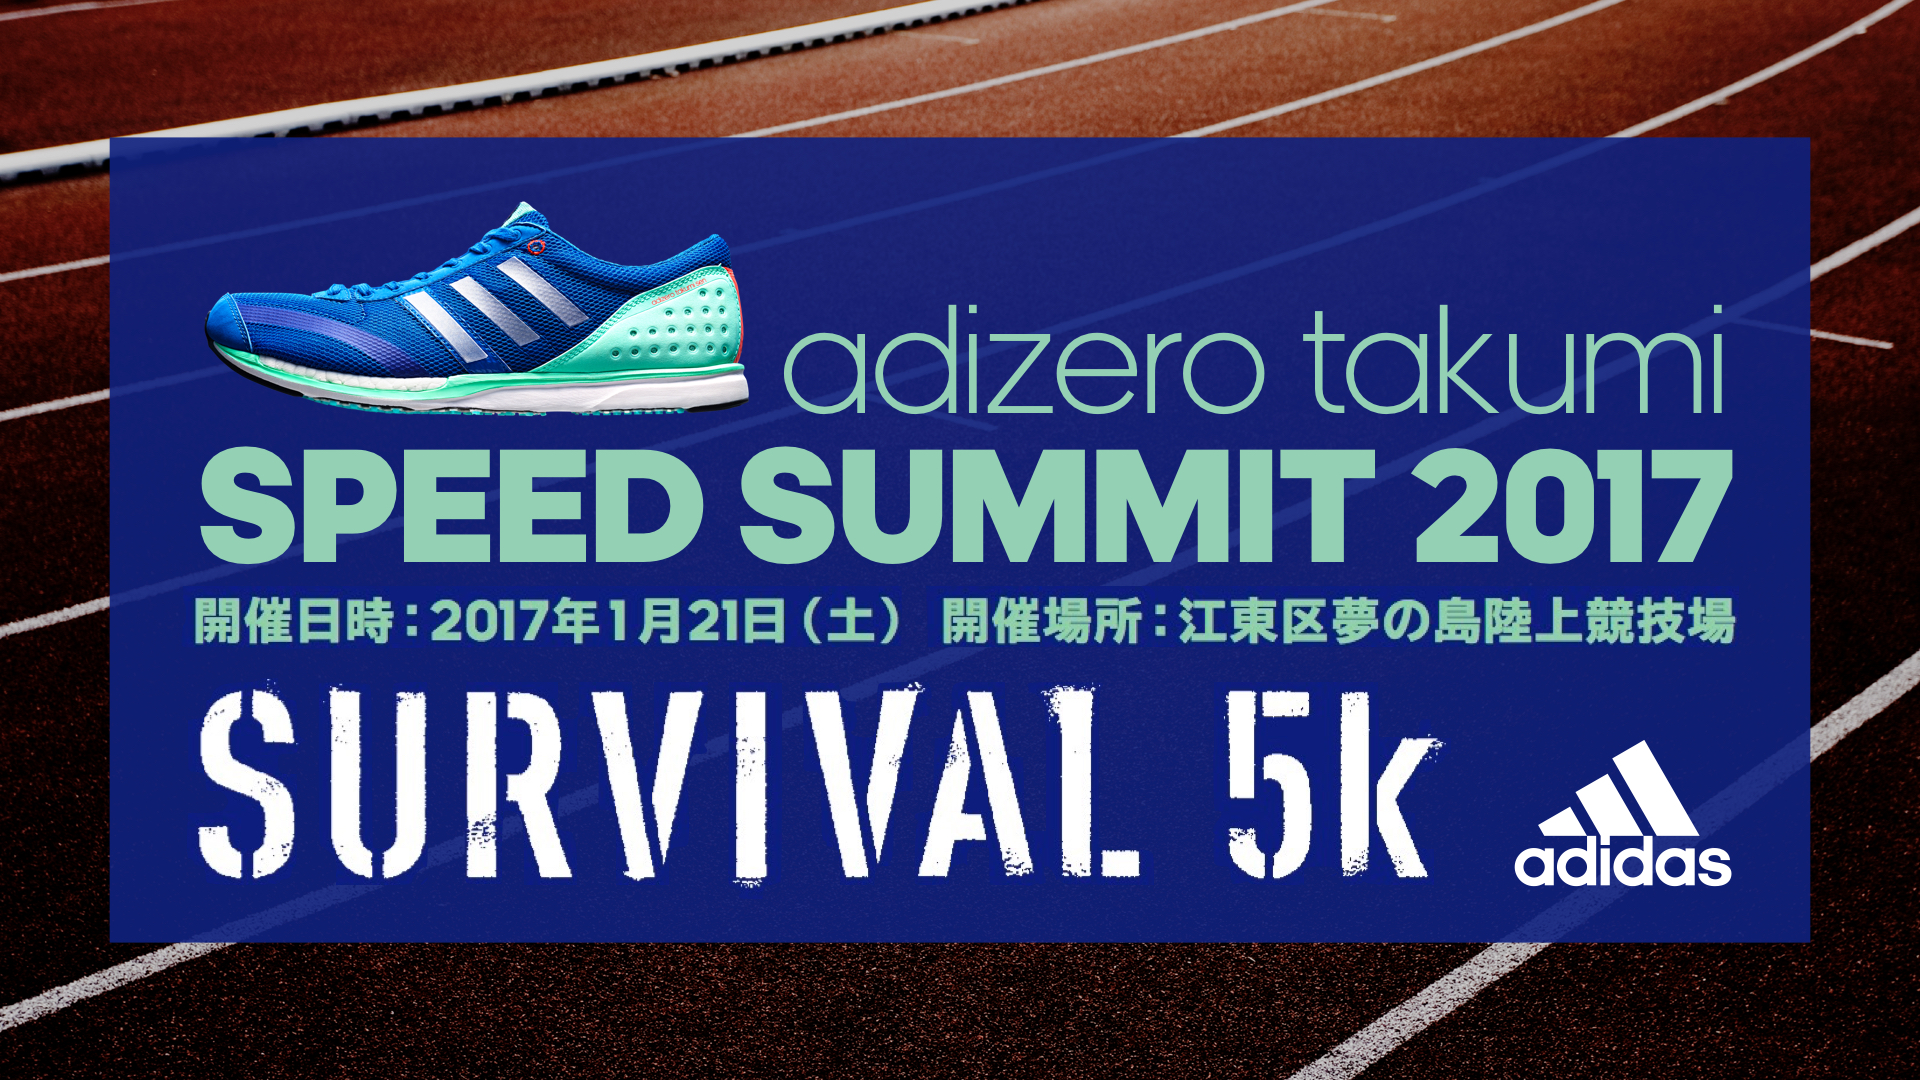 シリアスランナー向け最新レーシングシューズ試走会 Survival 5k Adizero Takumi Speed Summit 17 アディダス ジャパン株式会社のプレスリリース